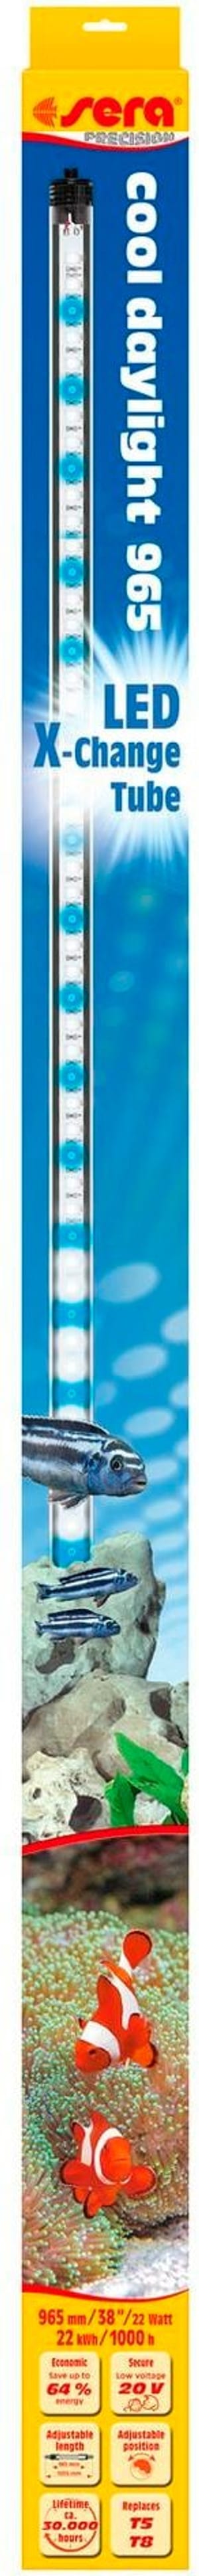 Leuchtmittel LED X-Change Tube CD, 965 mm